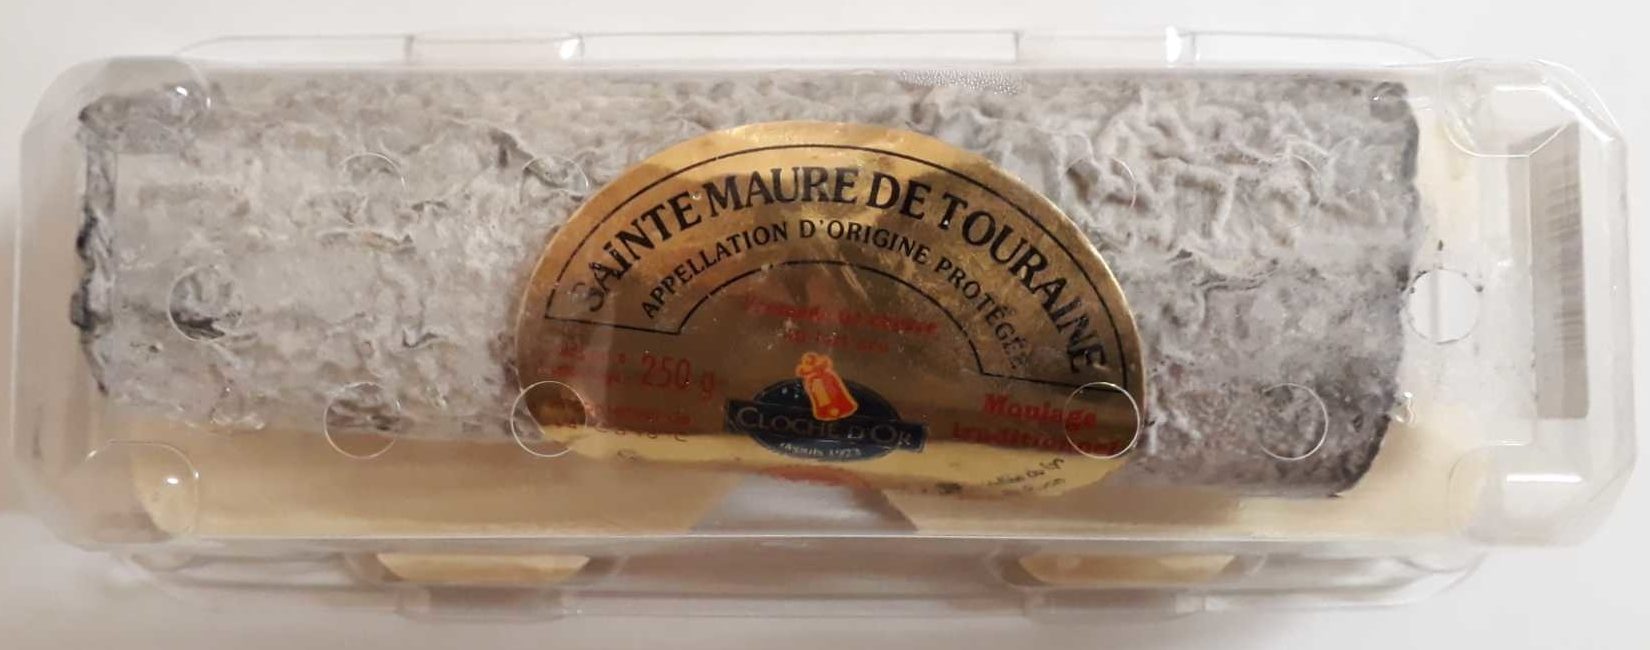 Cloche D'or Sainte Maure Tour Aop Cave250G - Product - fr